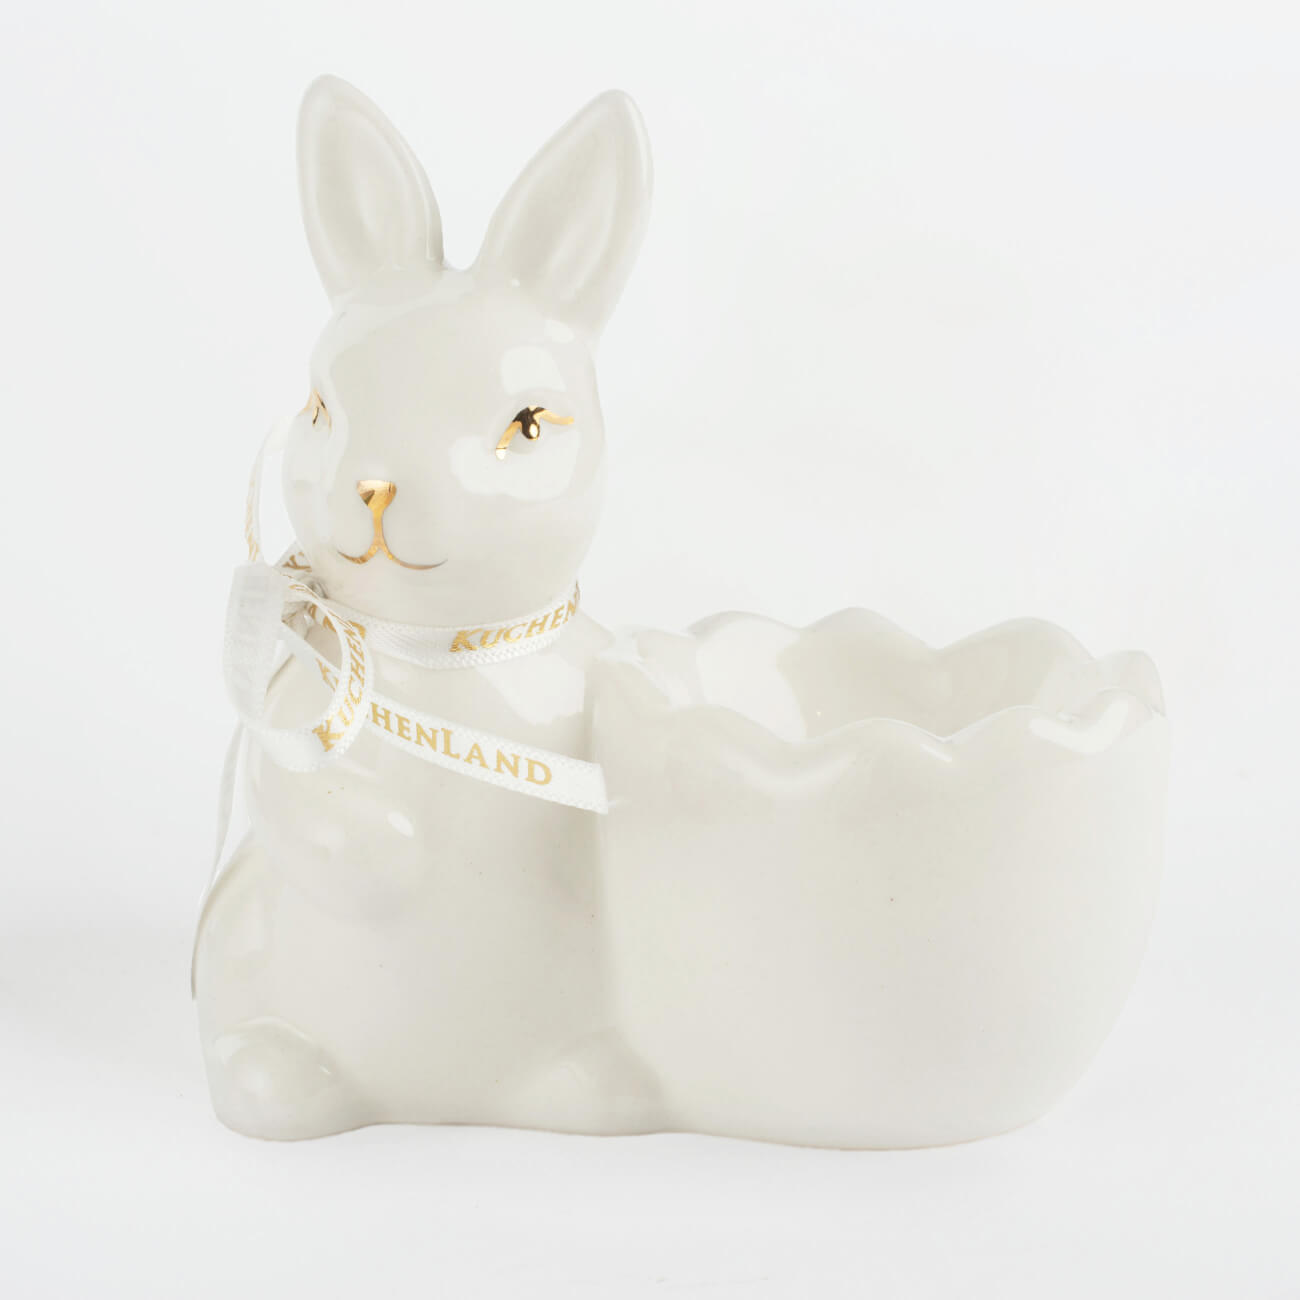 Подставка для яйца, 10 см, керамика, бело-золотистая, Кролик со скорлупкой, Easter gold подставка для яйца 3 отд 21х10 см керамика бело золотистая кролики easter gold